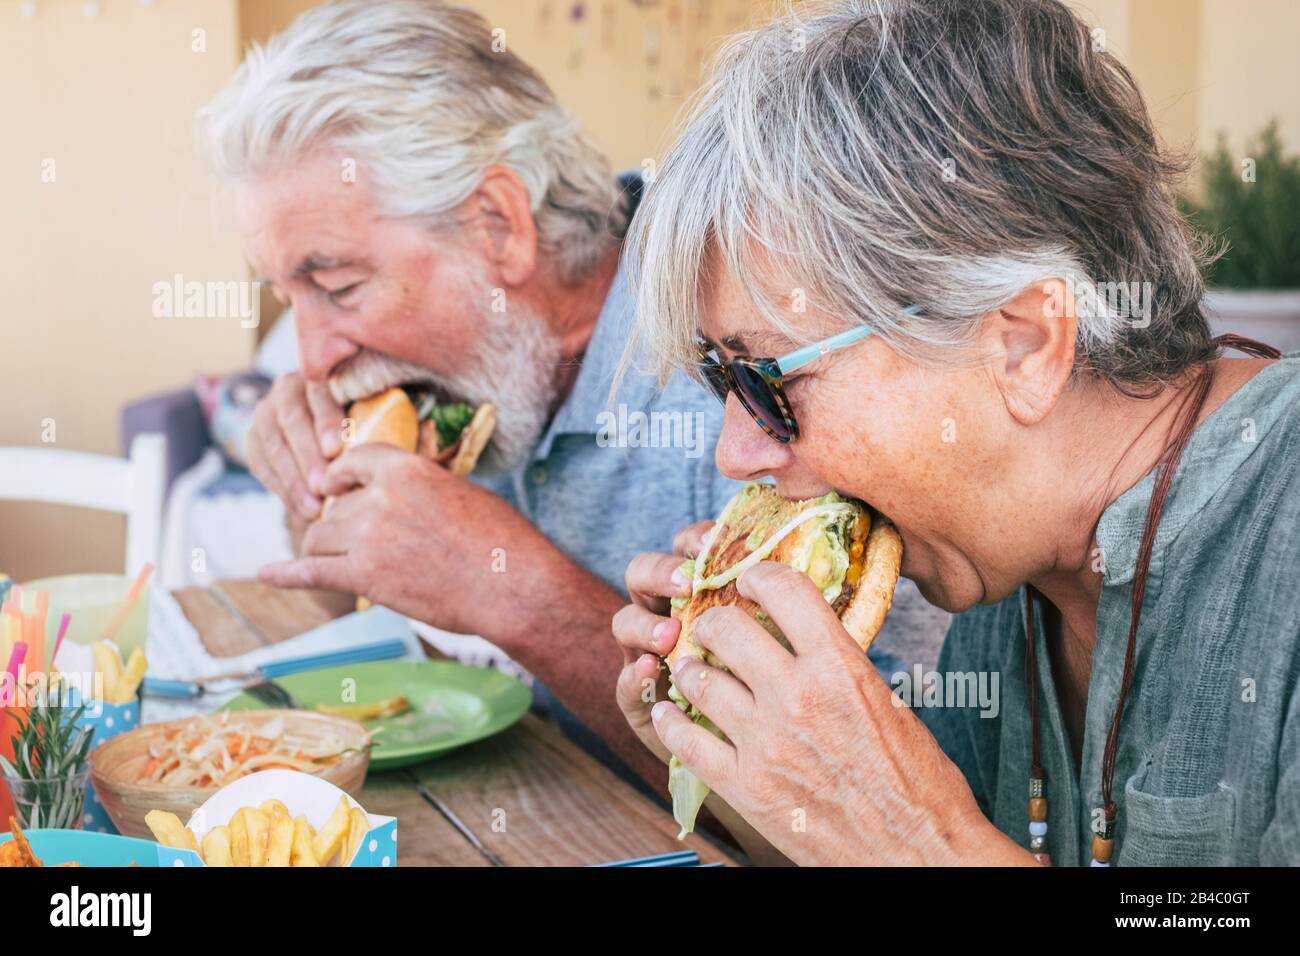 Gente comiendo comida basura de la hamburguesas - Pareja del hombre mayor y de la mujer con comida rápida a la hora del almuerzo - cerca de los ancianos sin un estilo de vida saludable - sabroso sándwich lleno de todo Foto de stock